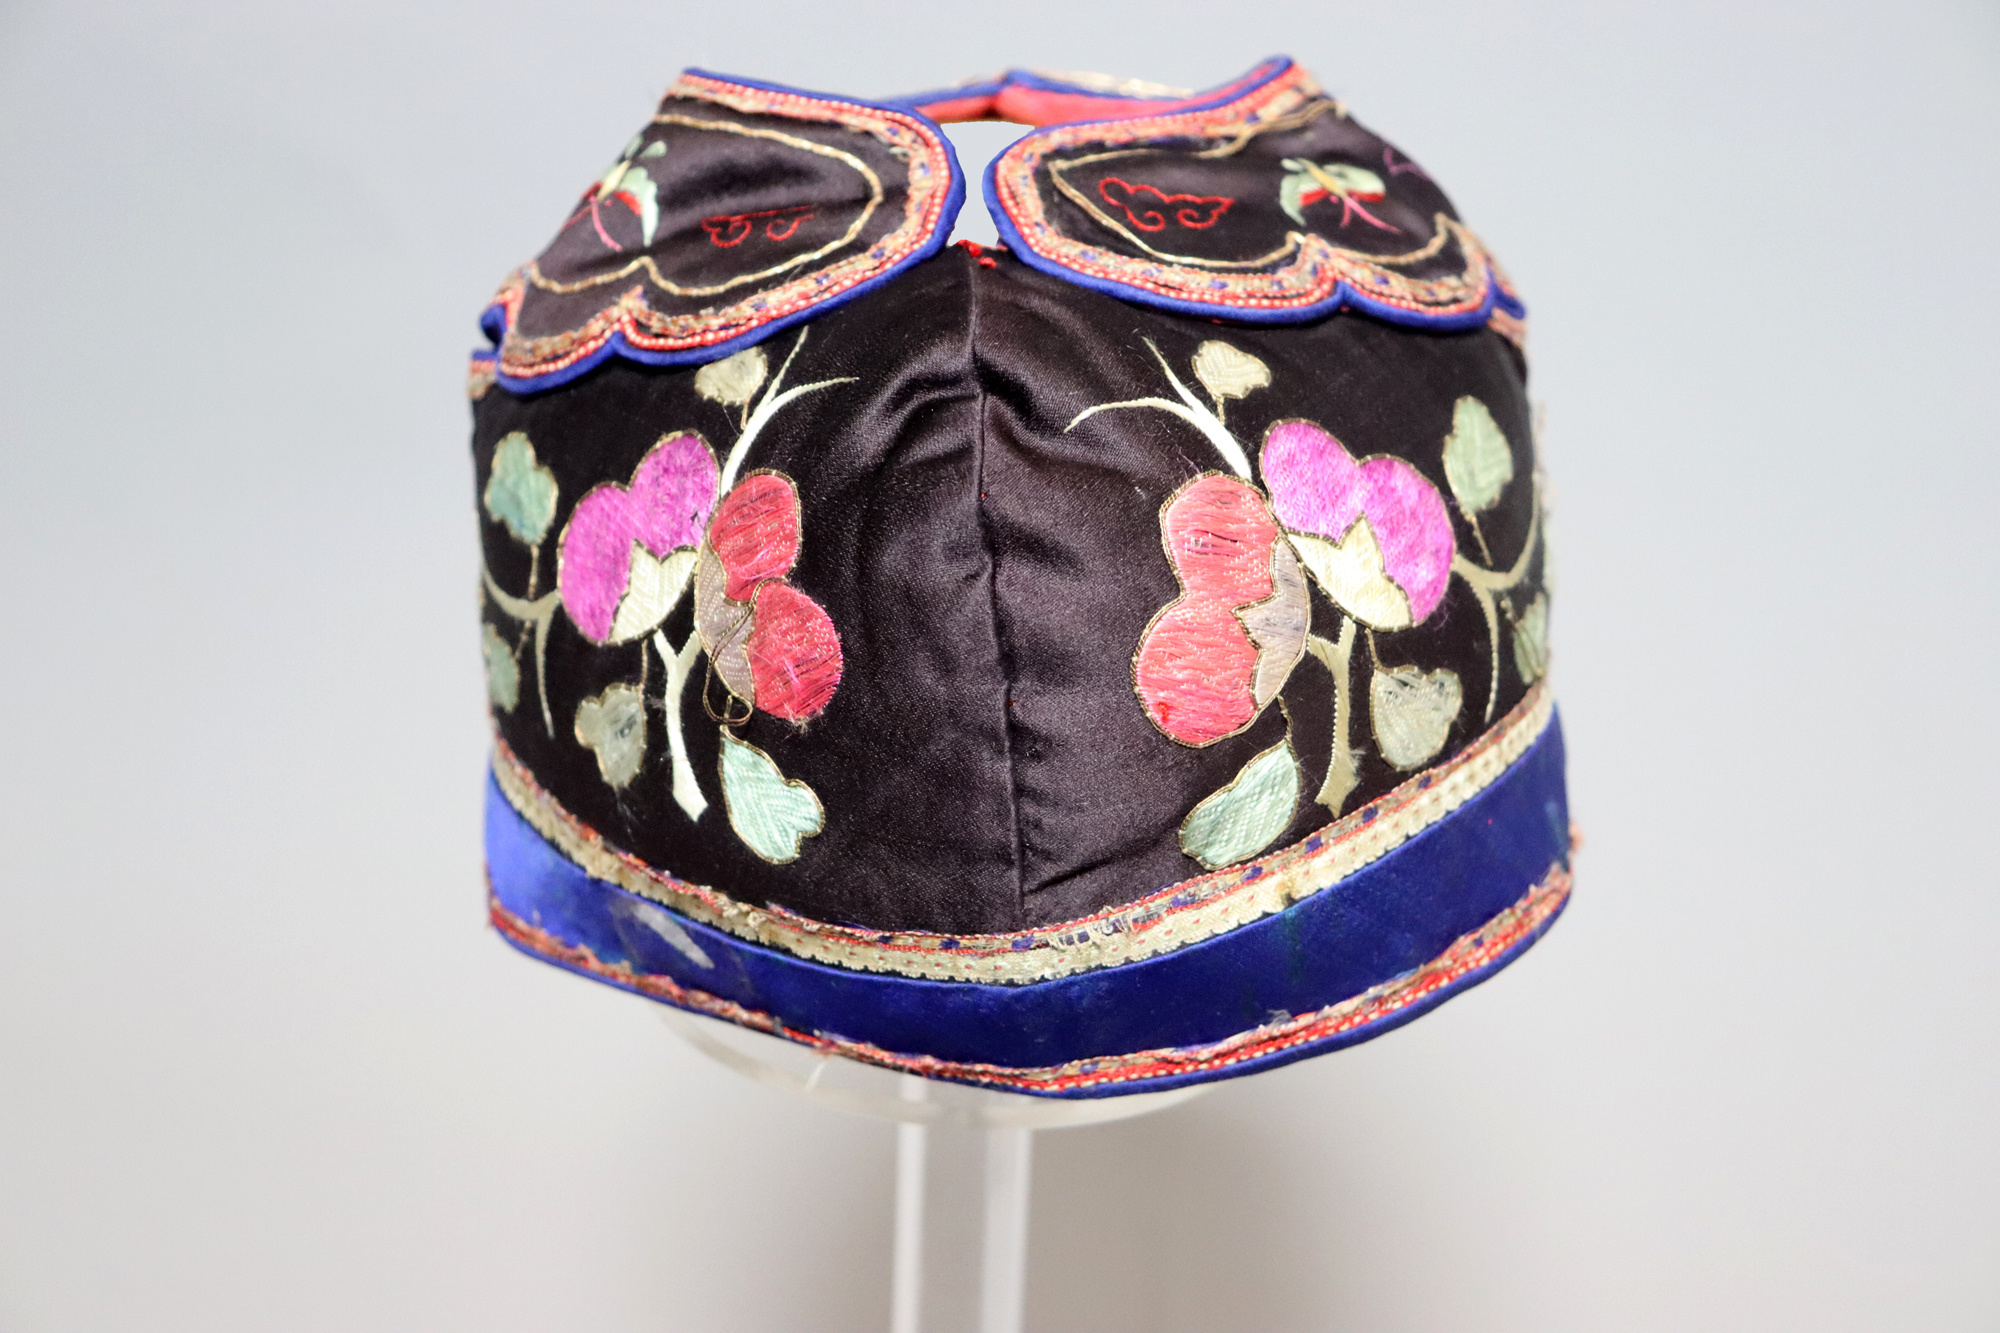 Antiker chinesischer Miao-Hut aus Seide, bestickt, Baby-Mütze No:22/27